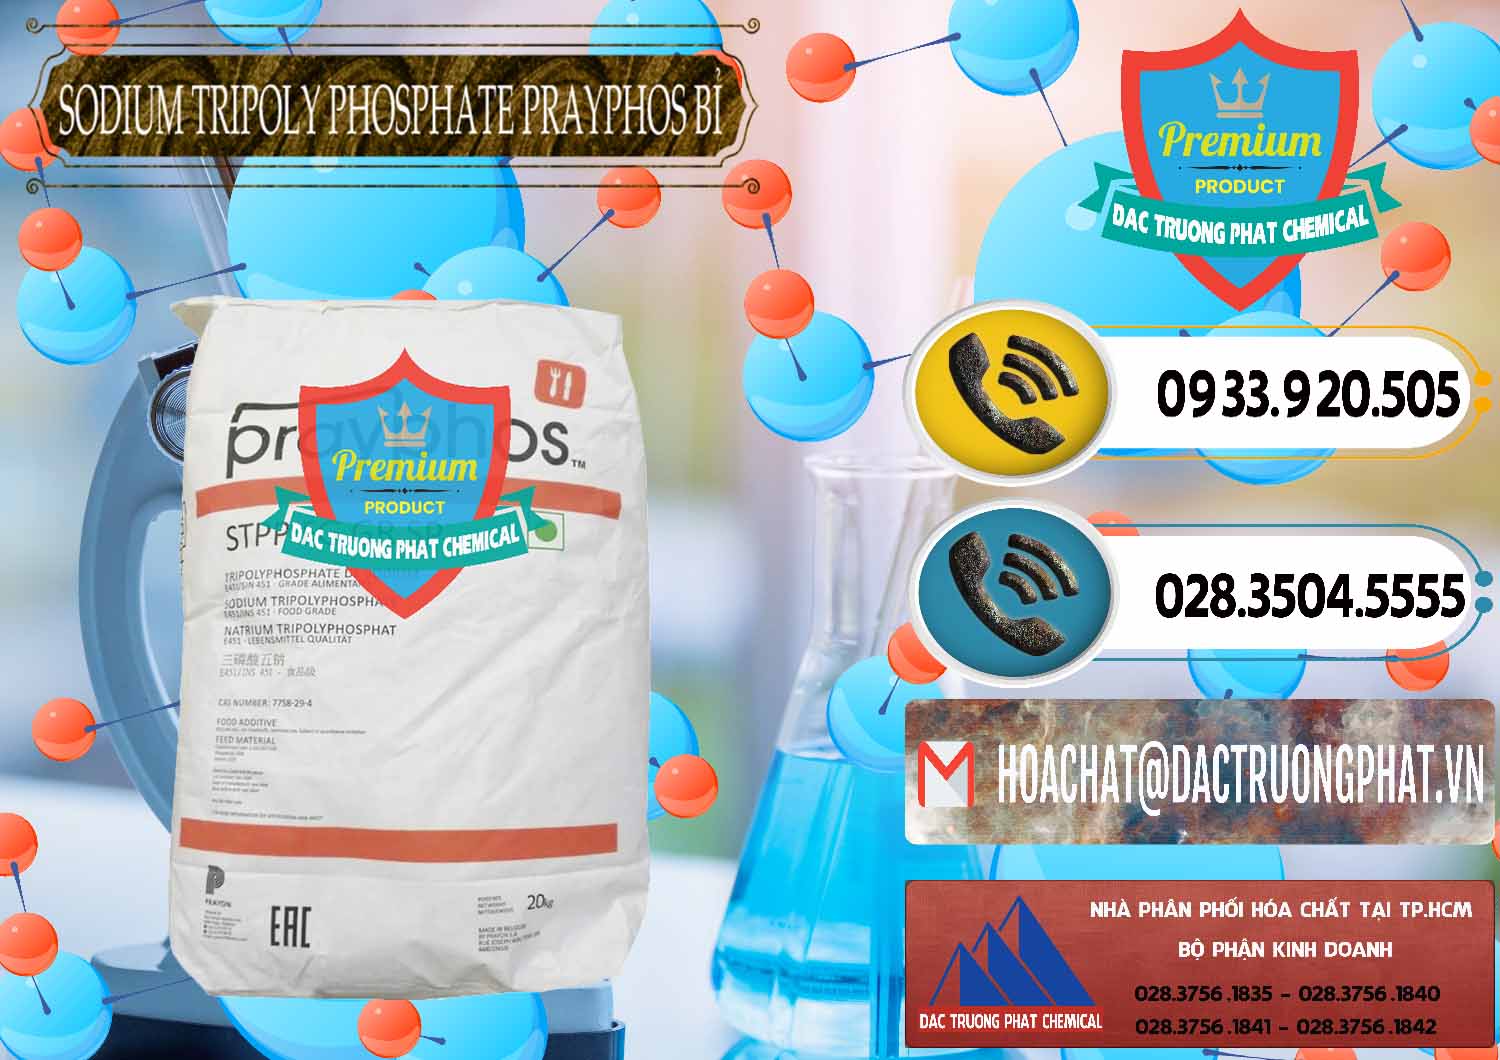 Nơi chuyên phân phối ( bán ) Sodium Tripoly Phosphate - STPP Prayphos Bỉ Belgium - 0444 - Cty phân phối _ cung cấp hóa chất tại TP.HCM - hoachatdetnhuom.vn